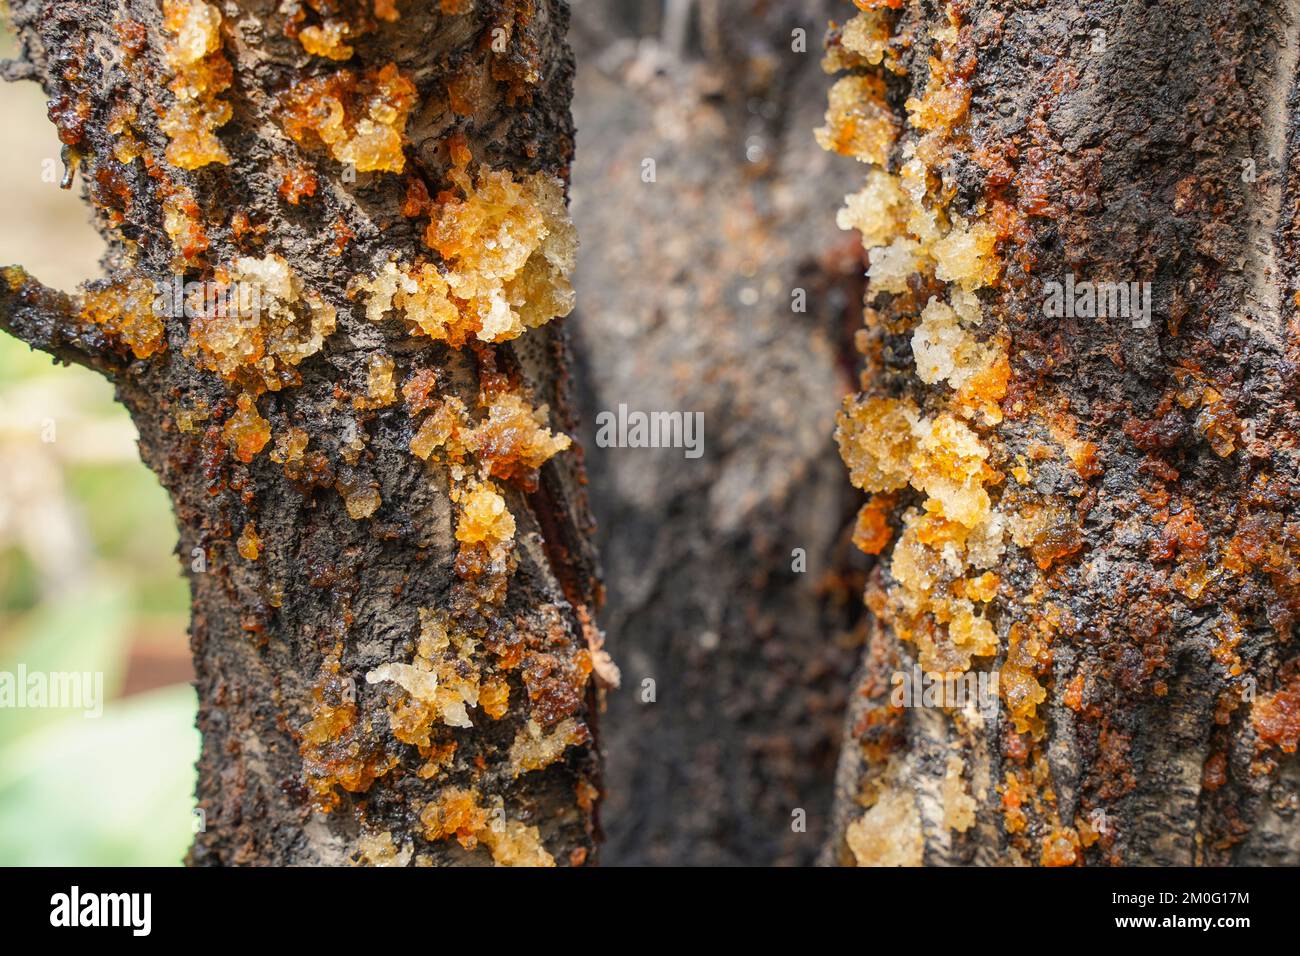 Almond albero trasudando linfa da corteccia a causa di malattie fungine, Spagna. Foto Stock